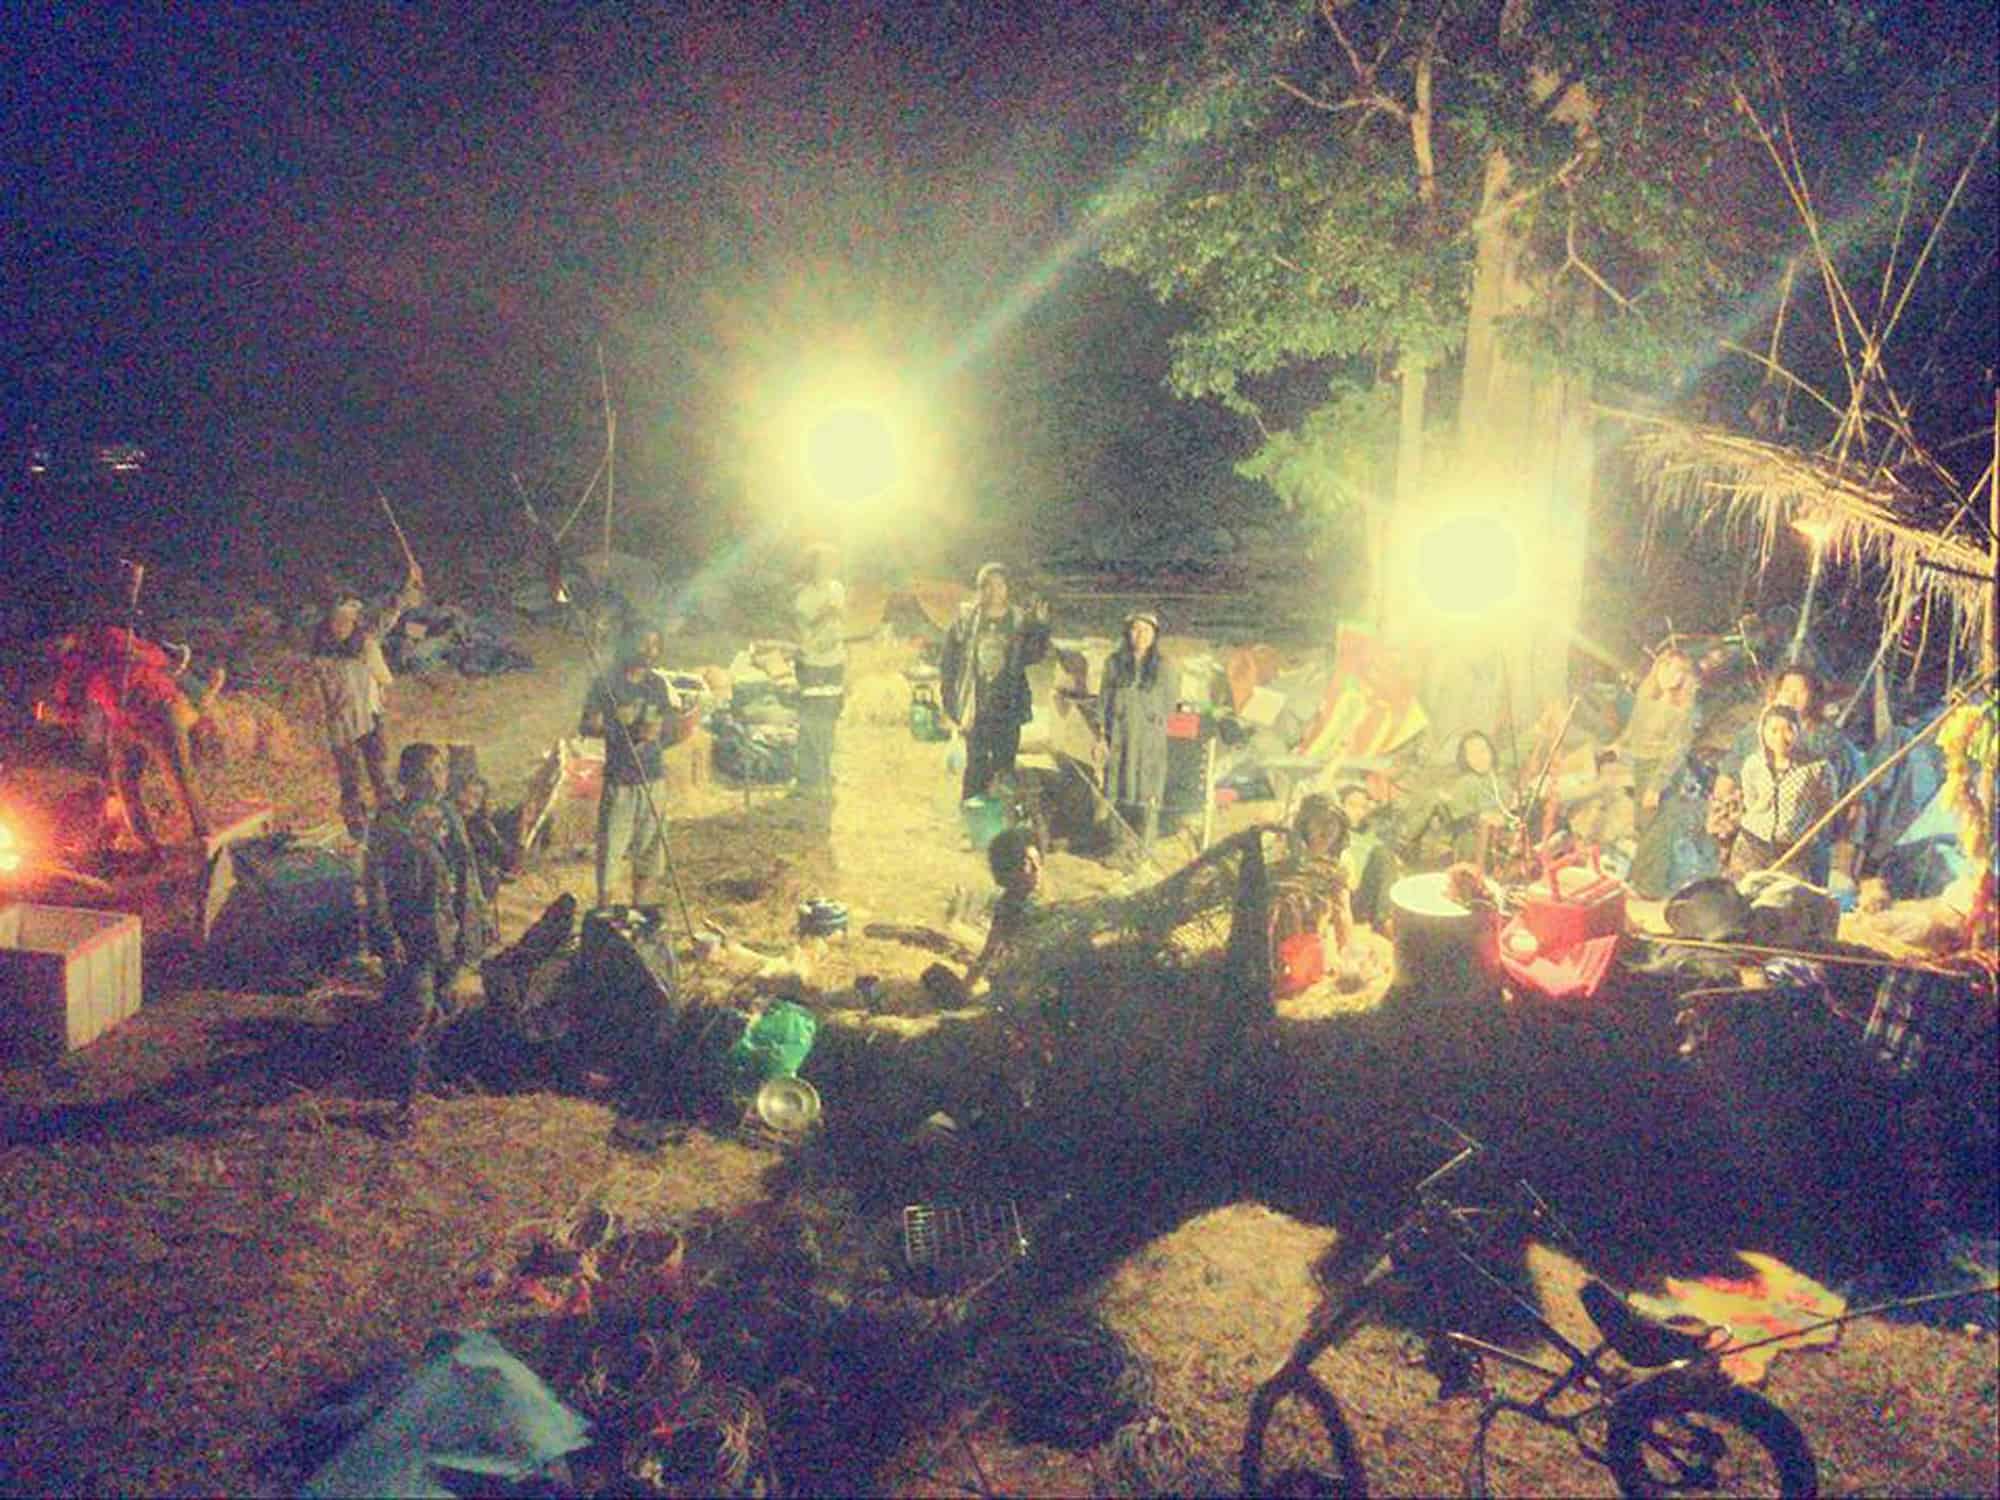 Gypsy Music Camp